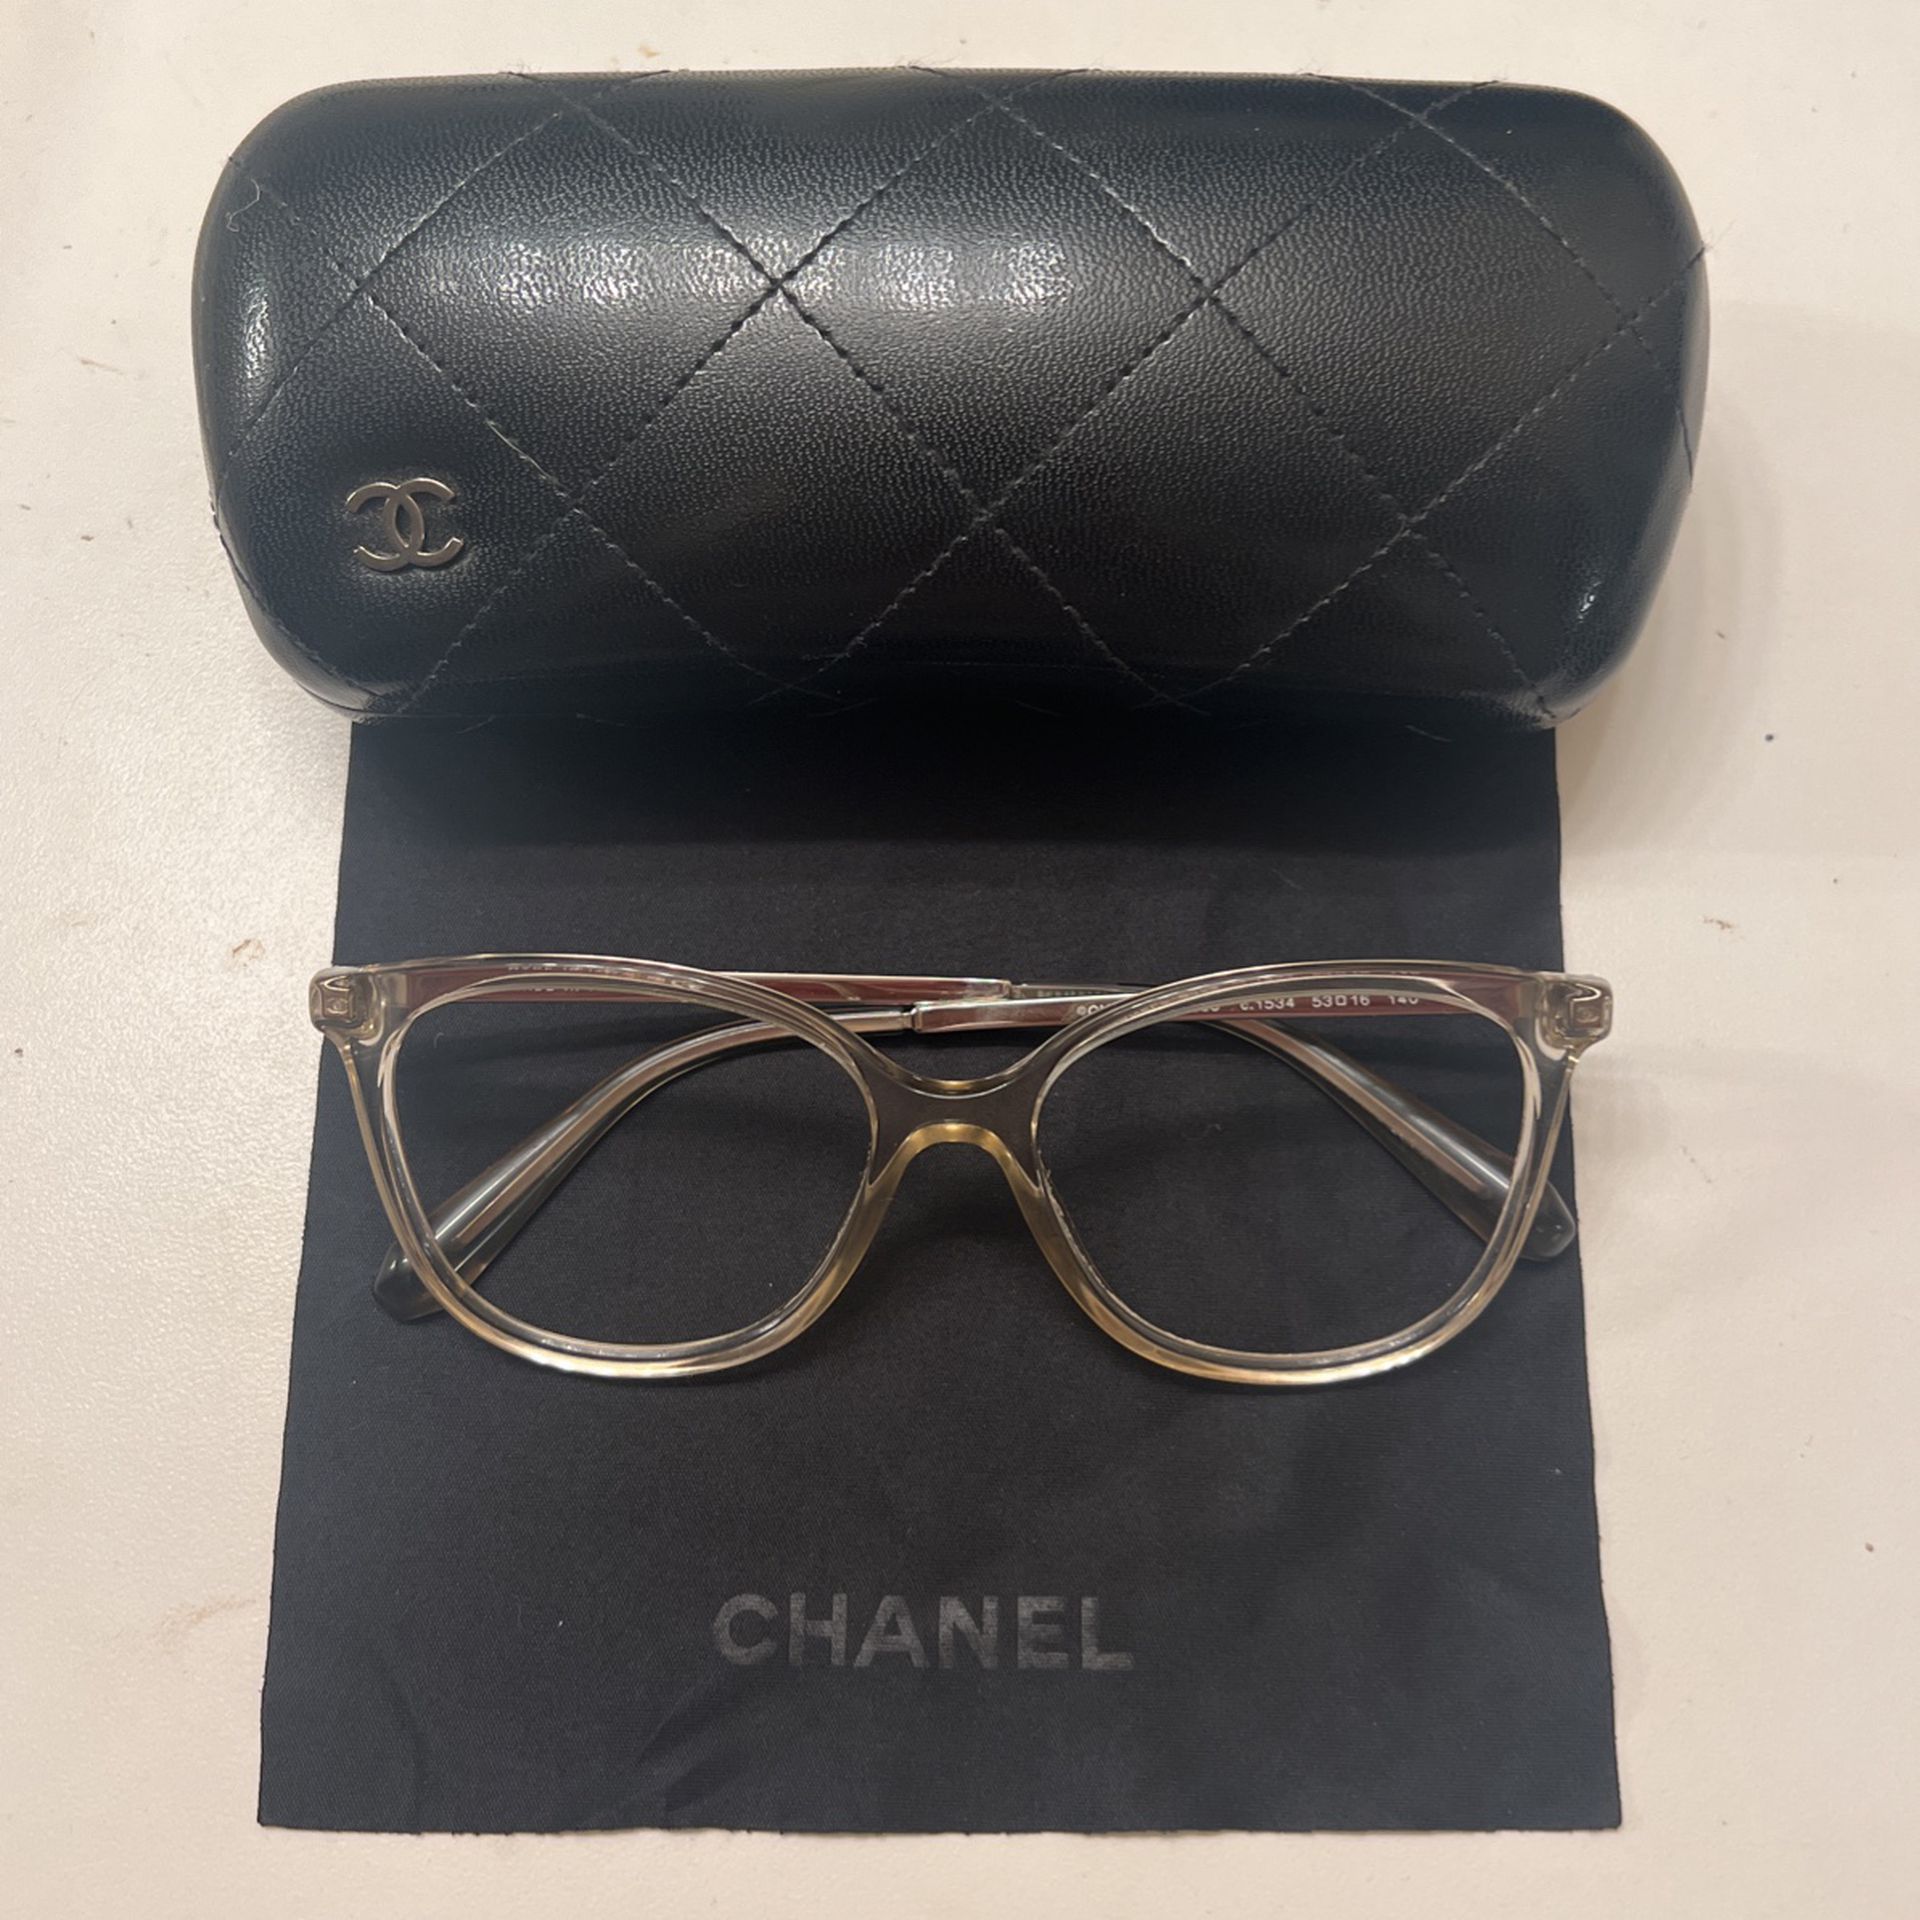 Chanel 3383 for Sale in Scottsdale, AZ - OfferUp